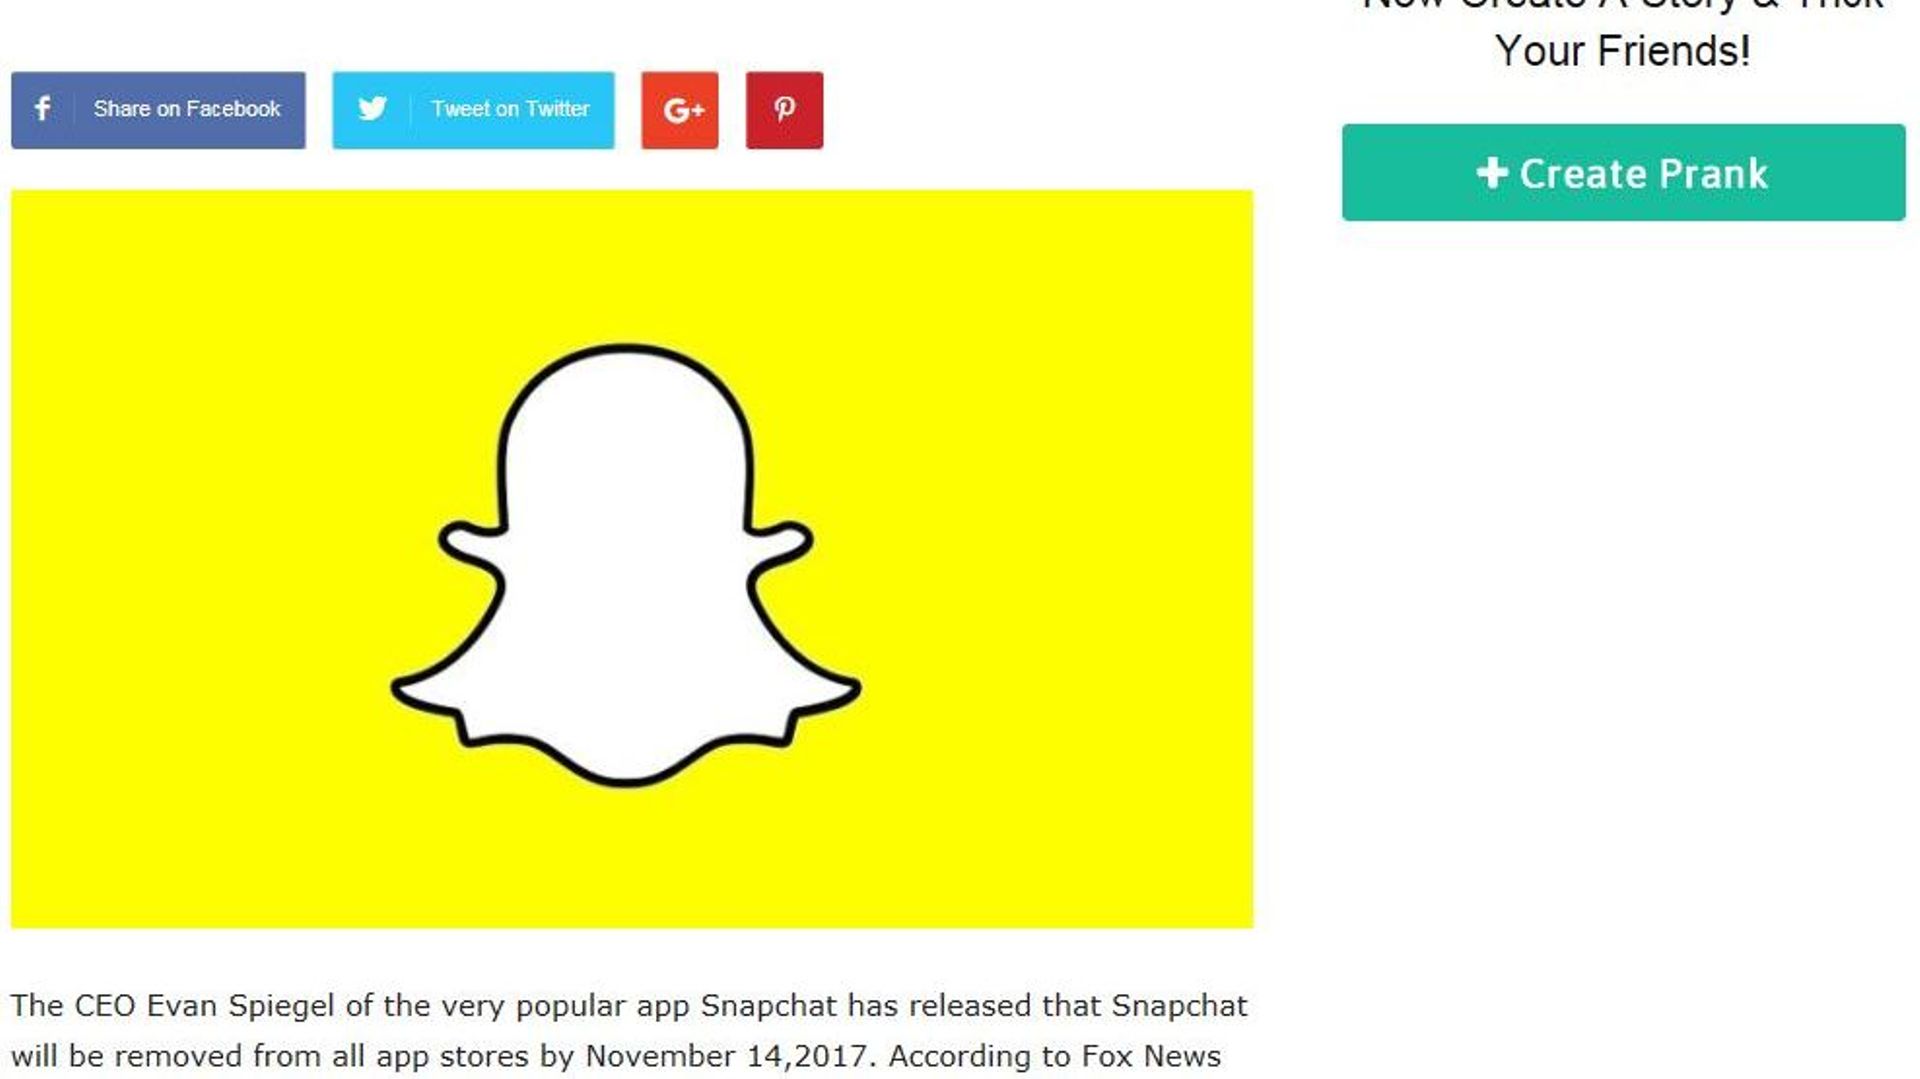 Un article de  Channel45News.com, annonçait la fermeture de Snapchat pour le 14 novembre. Mais c’était un canular.